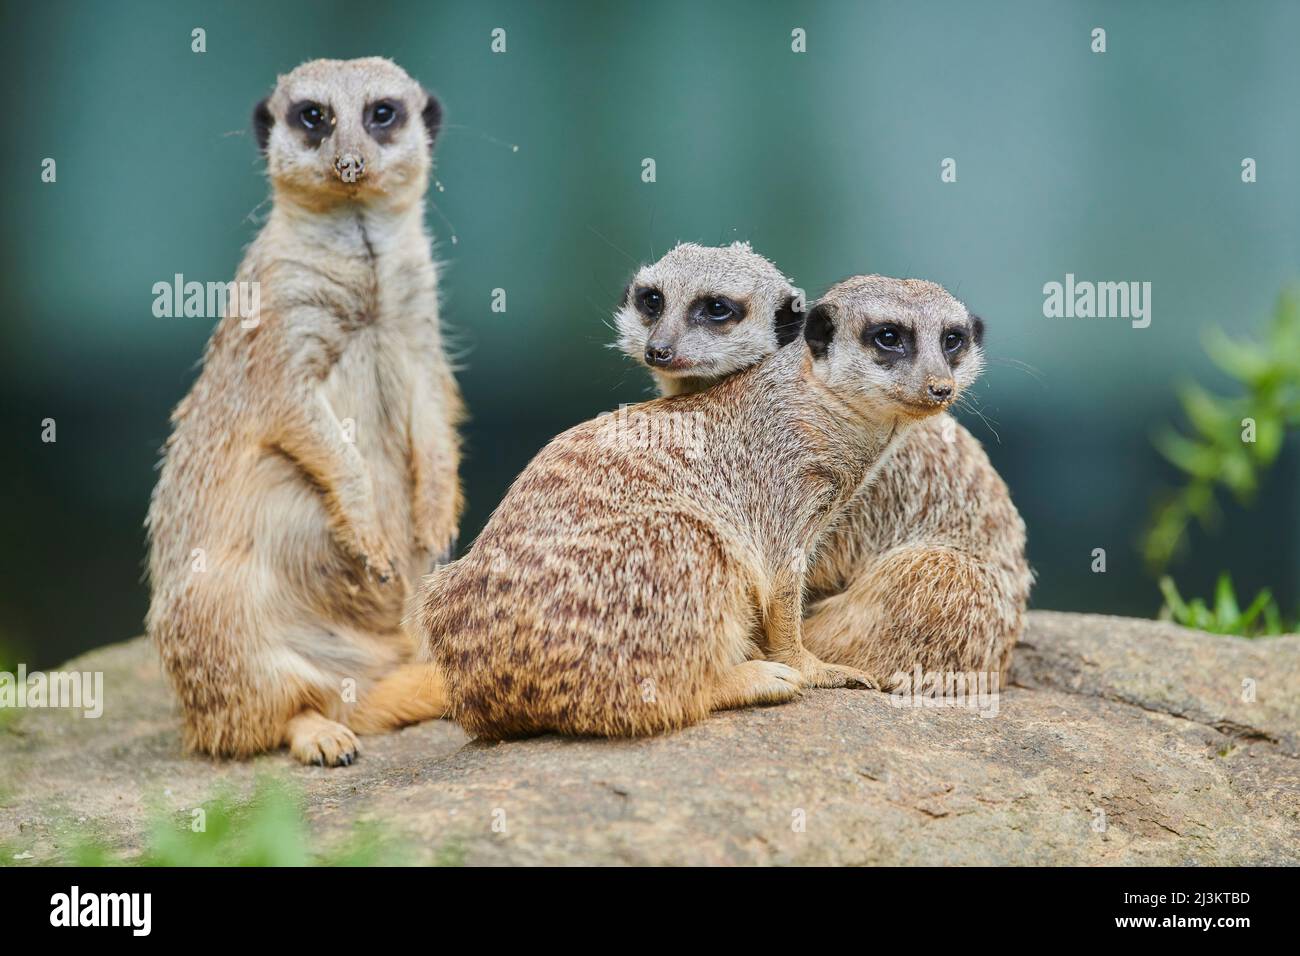 Portrait d'une foule de Meerkats ou de suricate (Suricata suricata) regardant la caméra, captive; Bavière, Allemagne Banque D'Images